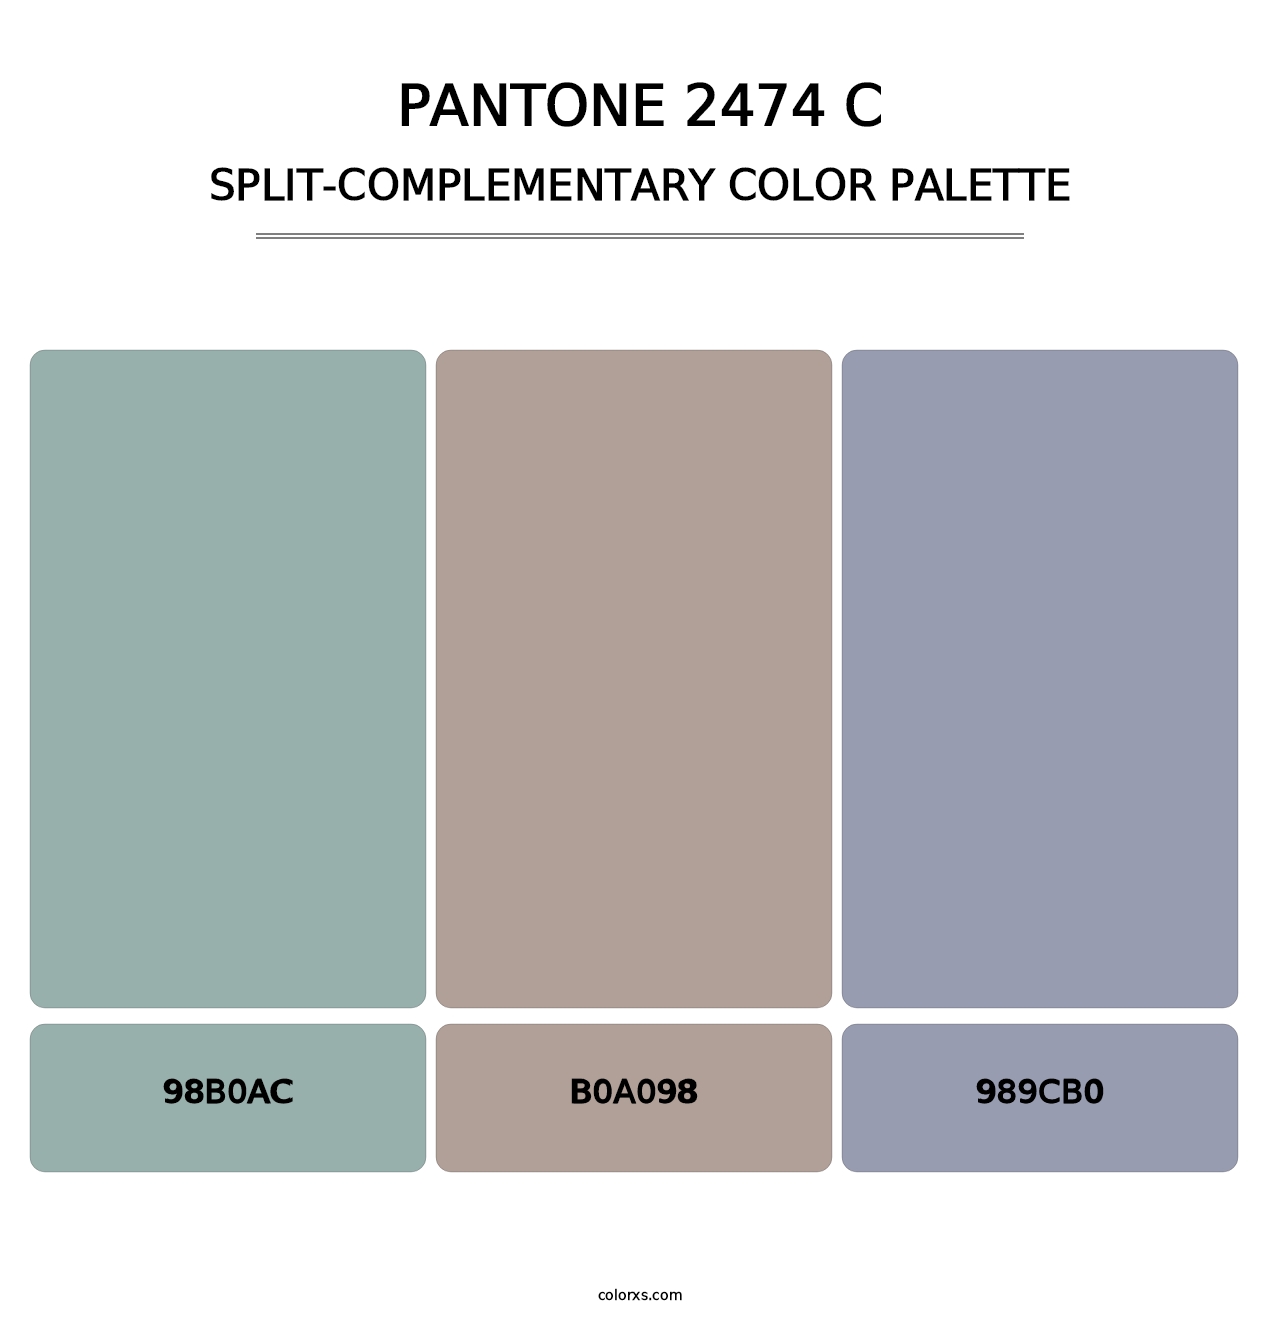 PANTONE 2474 C - Split-Complementary Color Palette